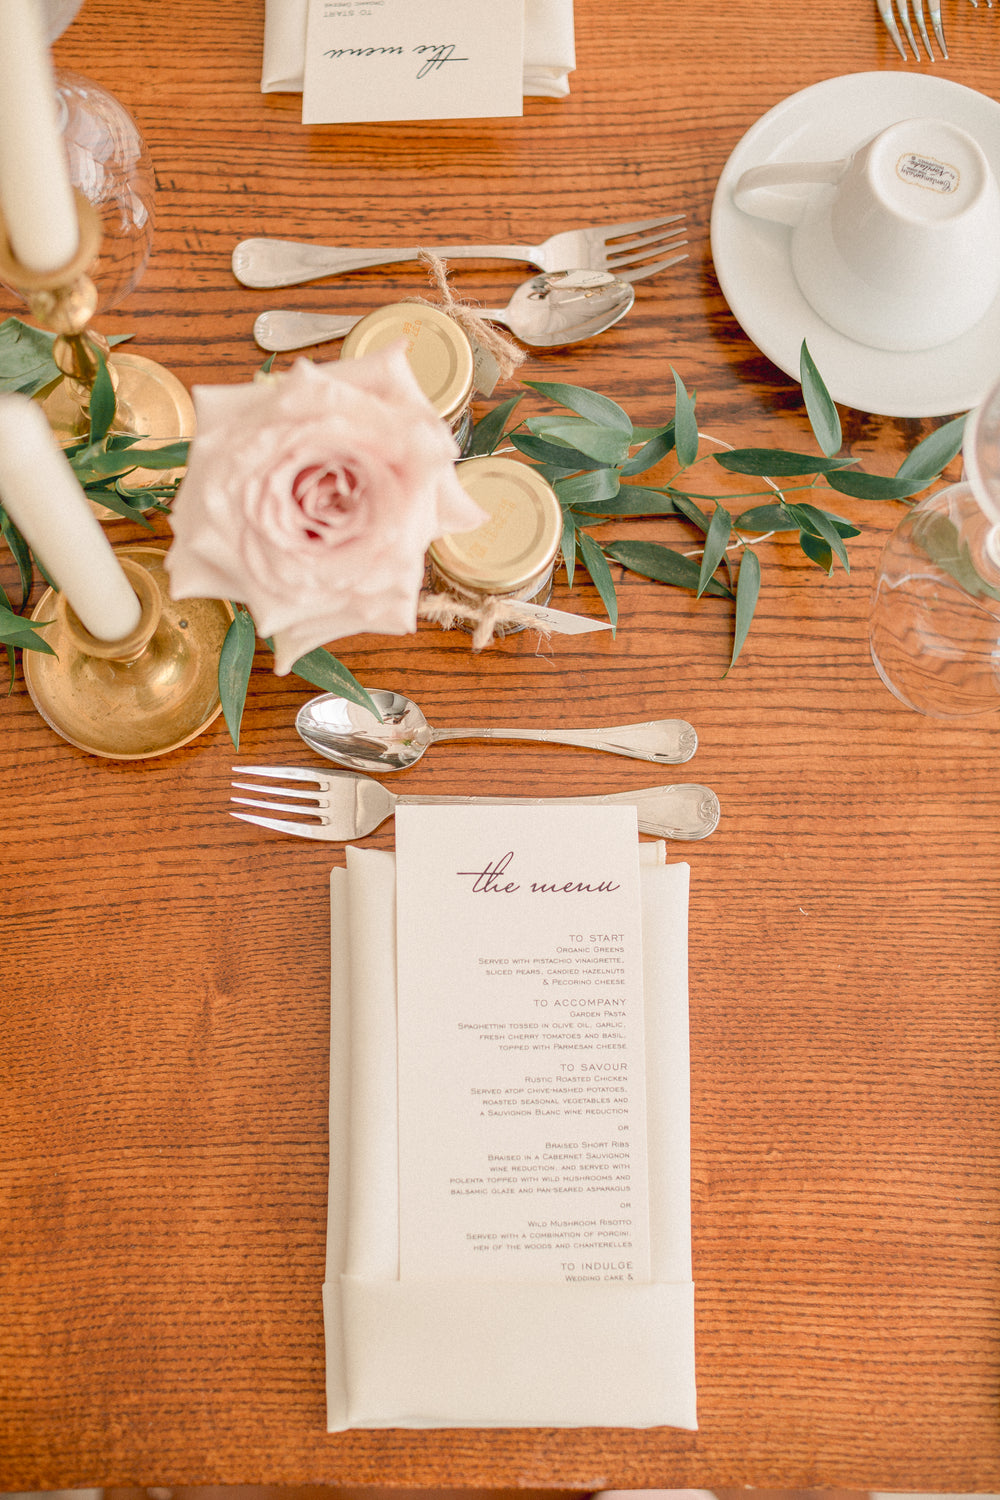 wedding receiption setting with menu